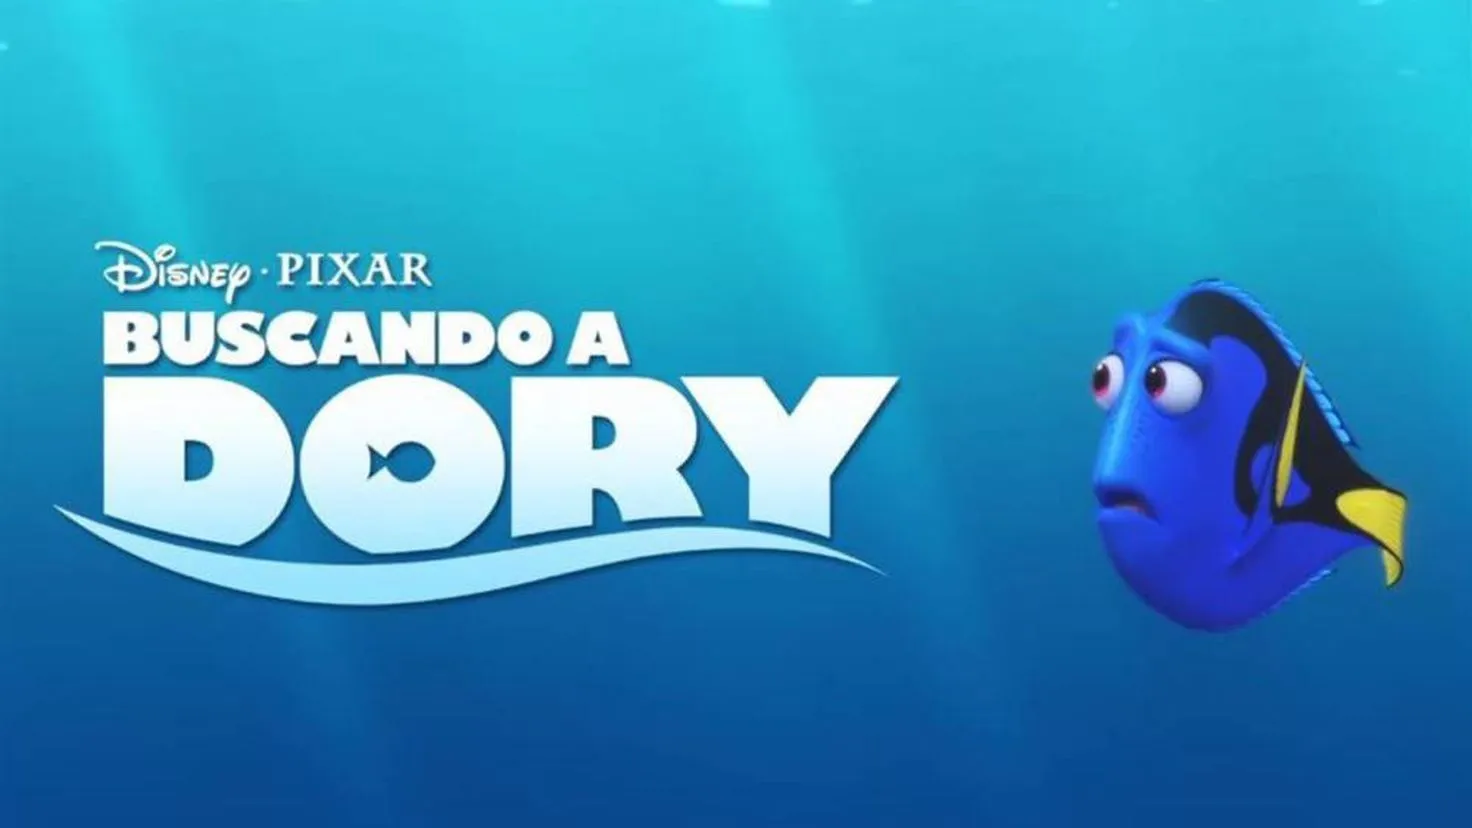 Cine: 'Buscando a Dory' da más pistas en su nuevo trailer internacional  'Buscando a Dory' da más pistas en su nuevo trailer internacional -  Tikitakas